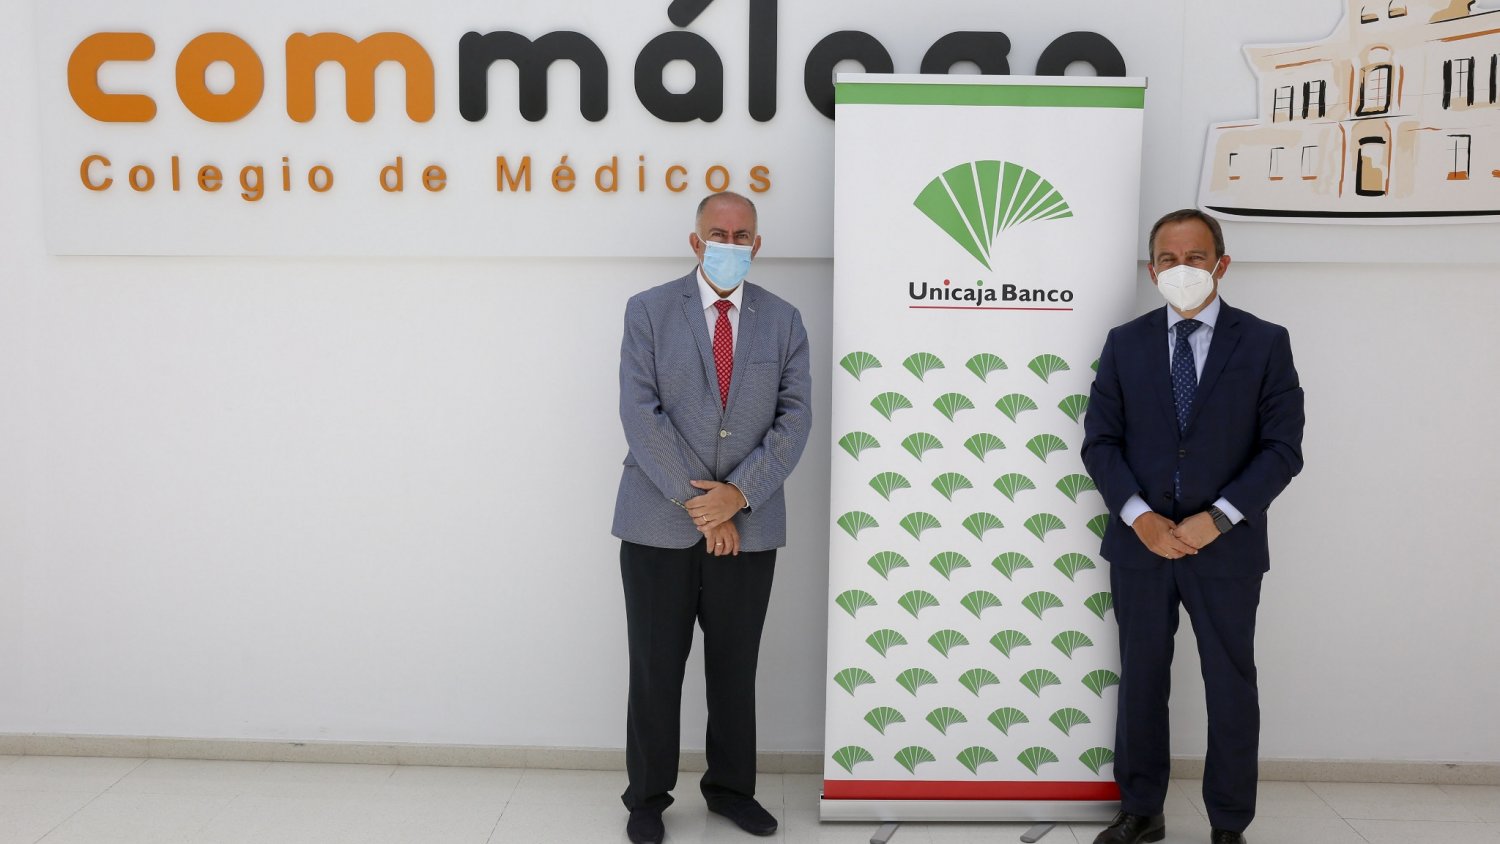 Unicaja Banco renueva su acuerdo con el Colegio de Médicos de Málaga favoreciendo su actividad